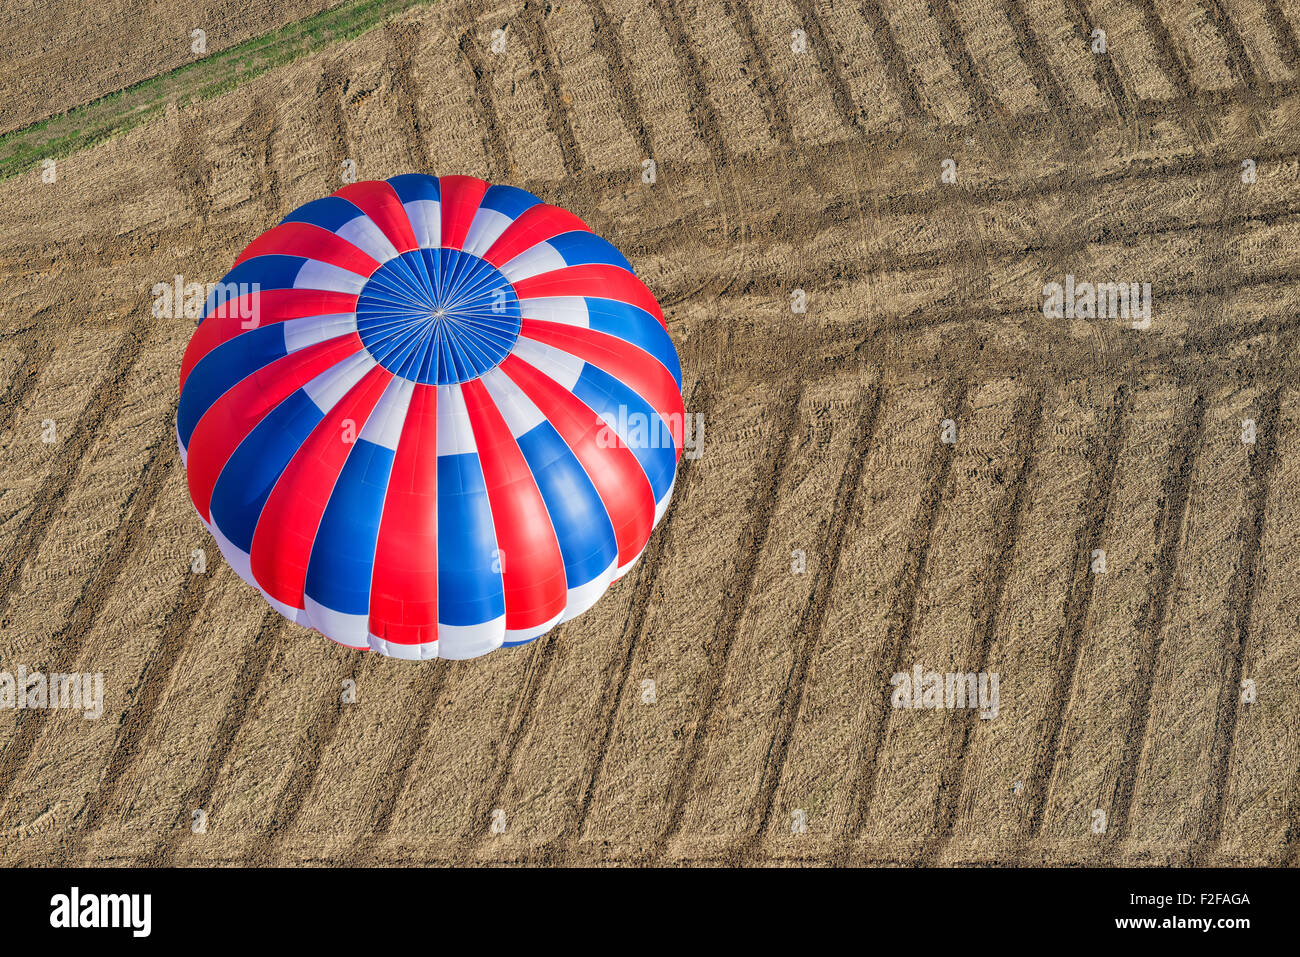 Aeriel vista de un vuelo en globo de aire caliente a través de un campo pelado Foto de stock